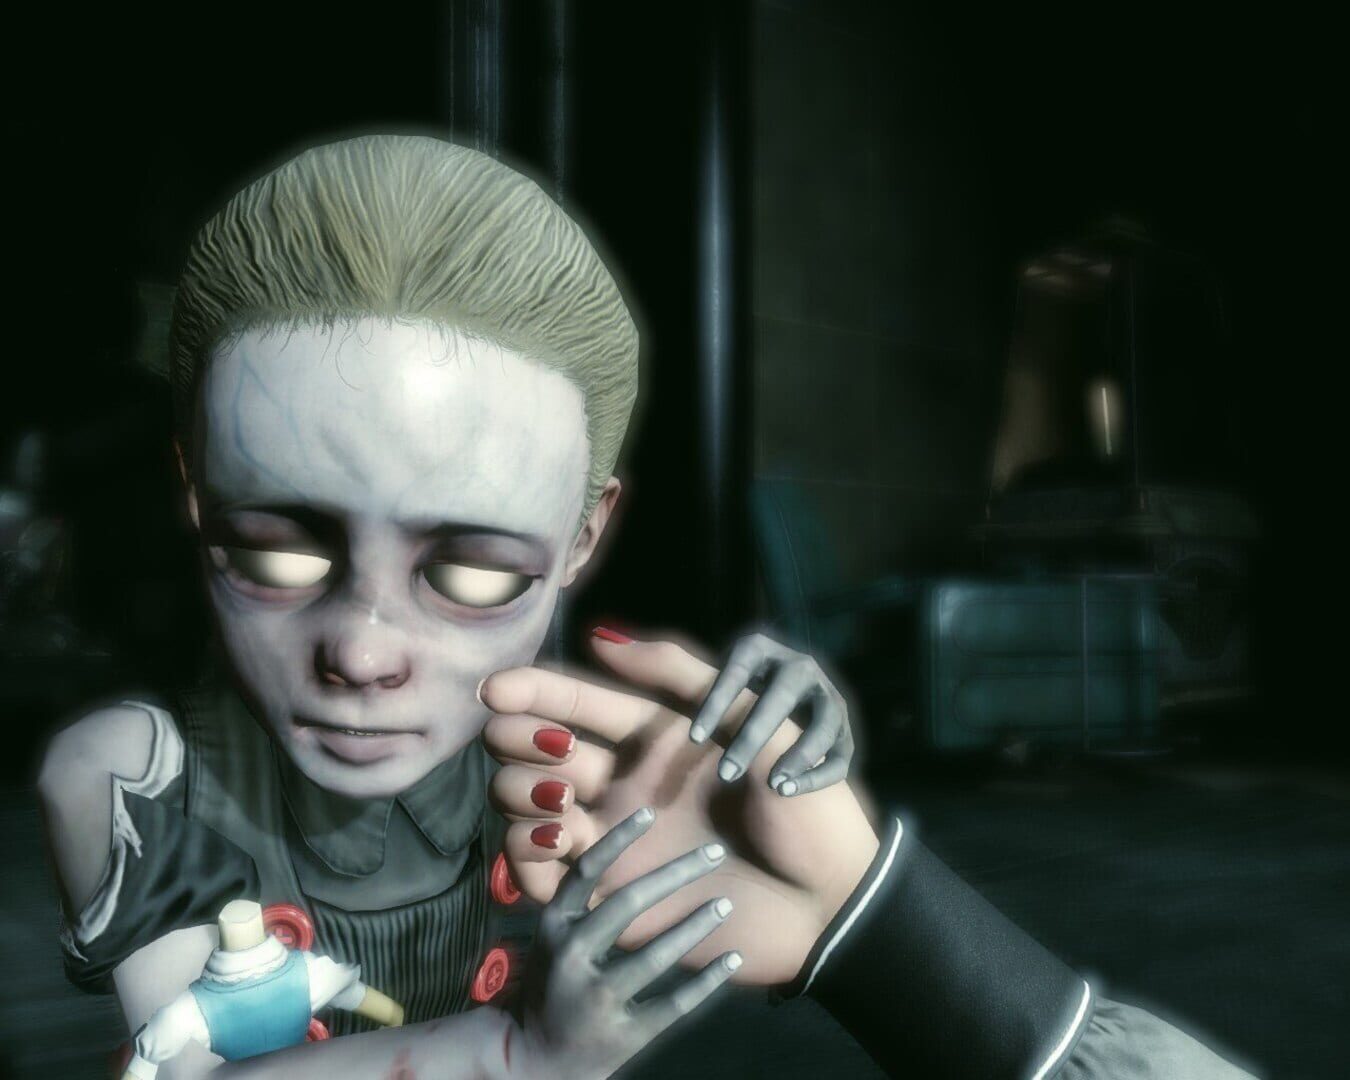 BioShock Infinite: Burial at Sea - Episode 2 screenshot